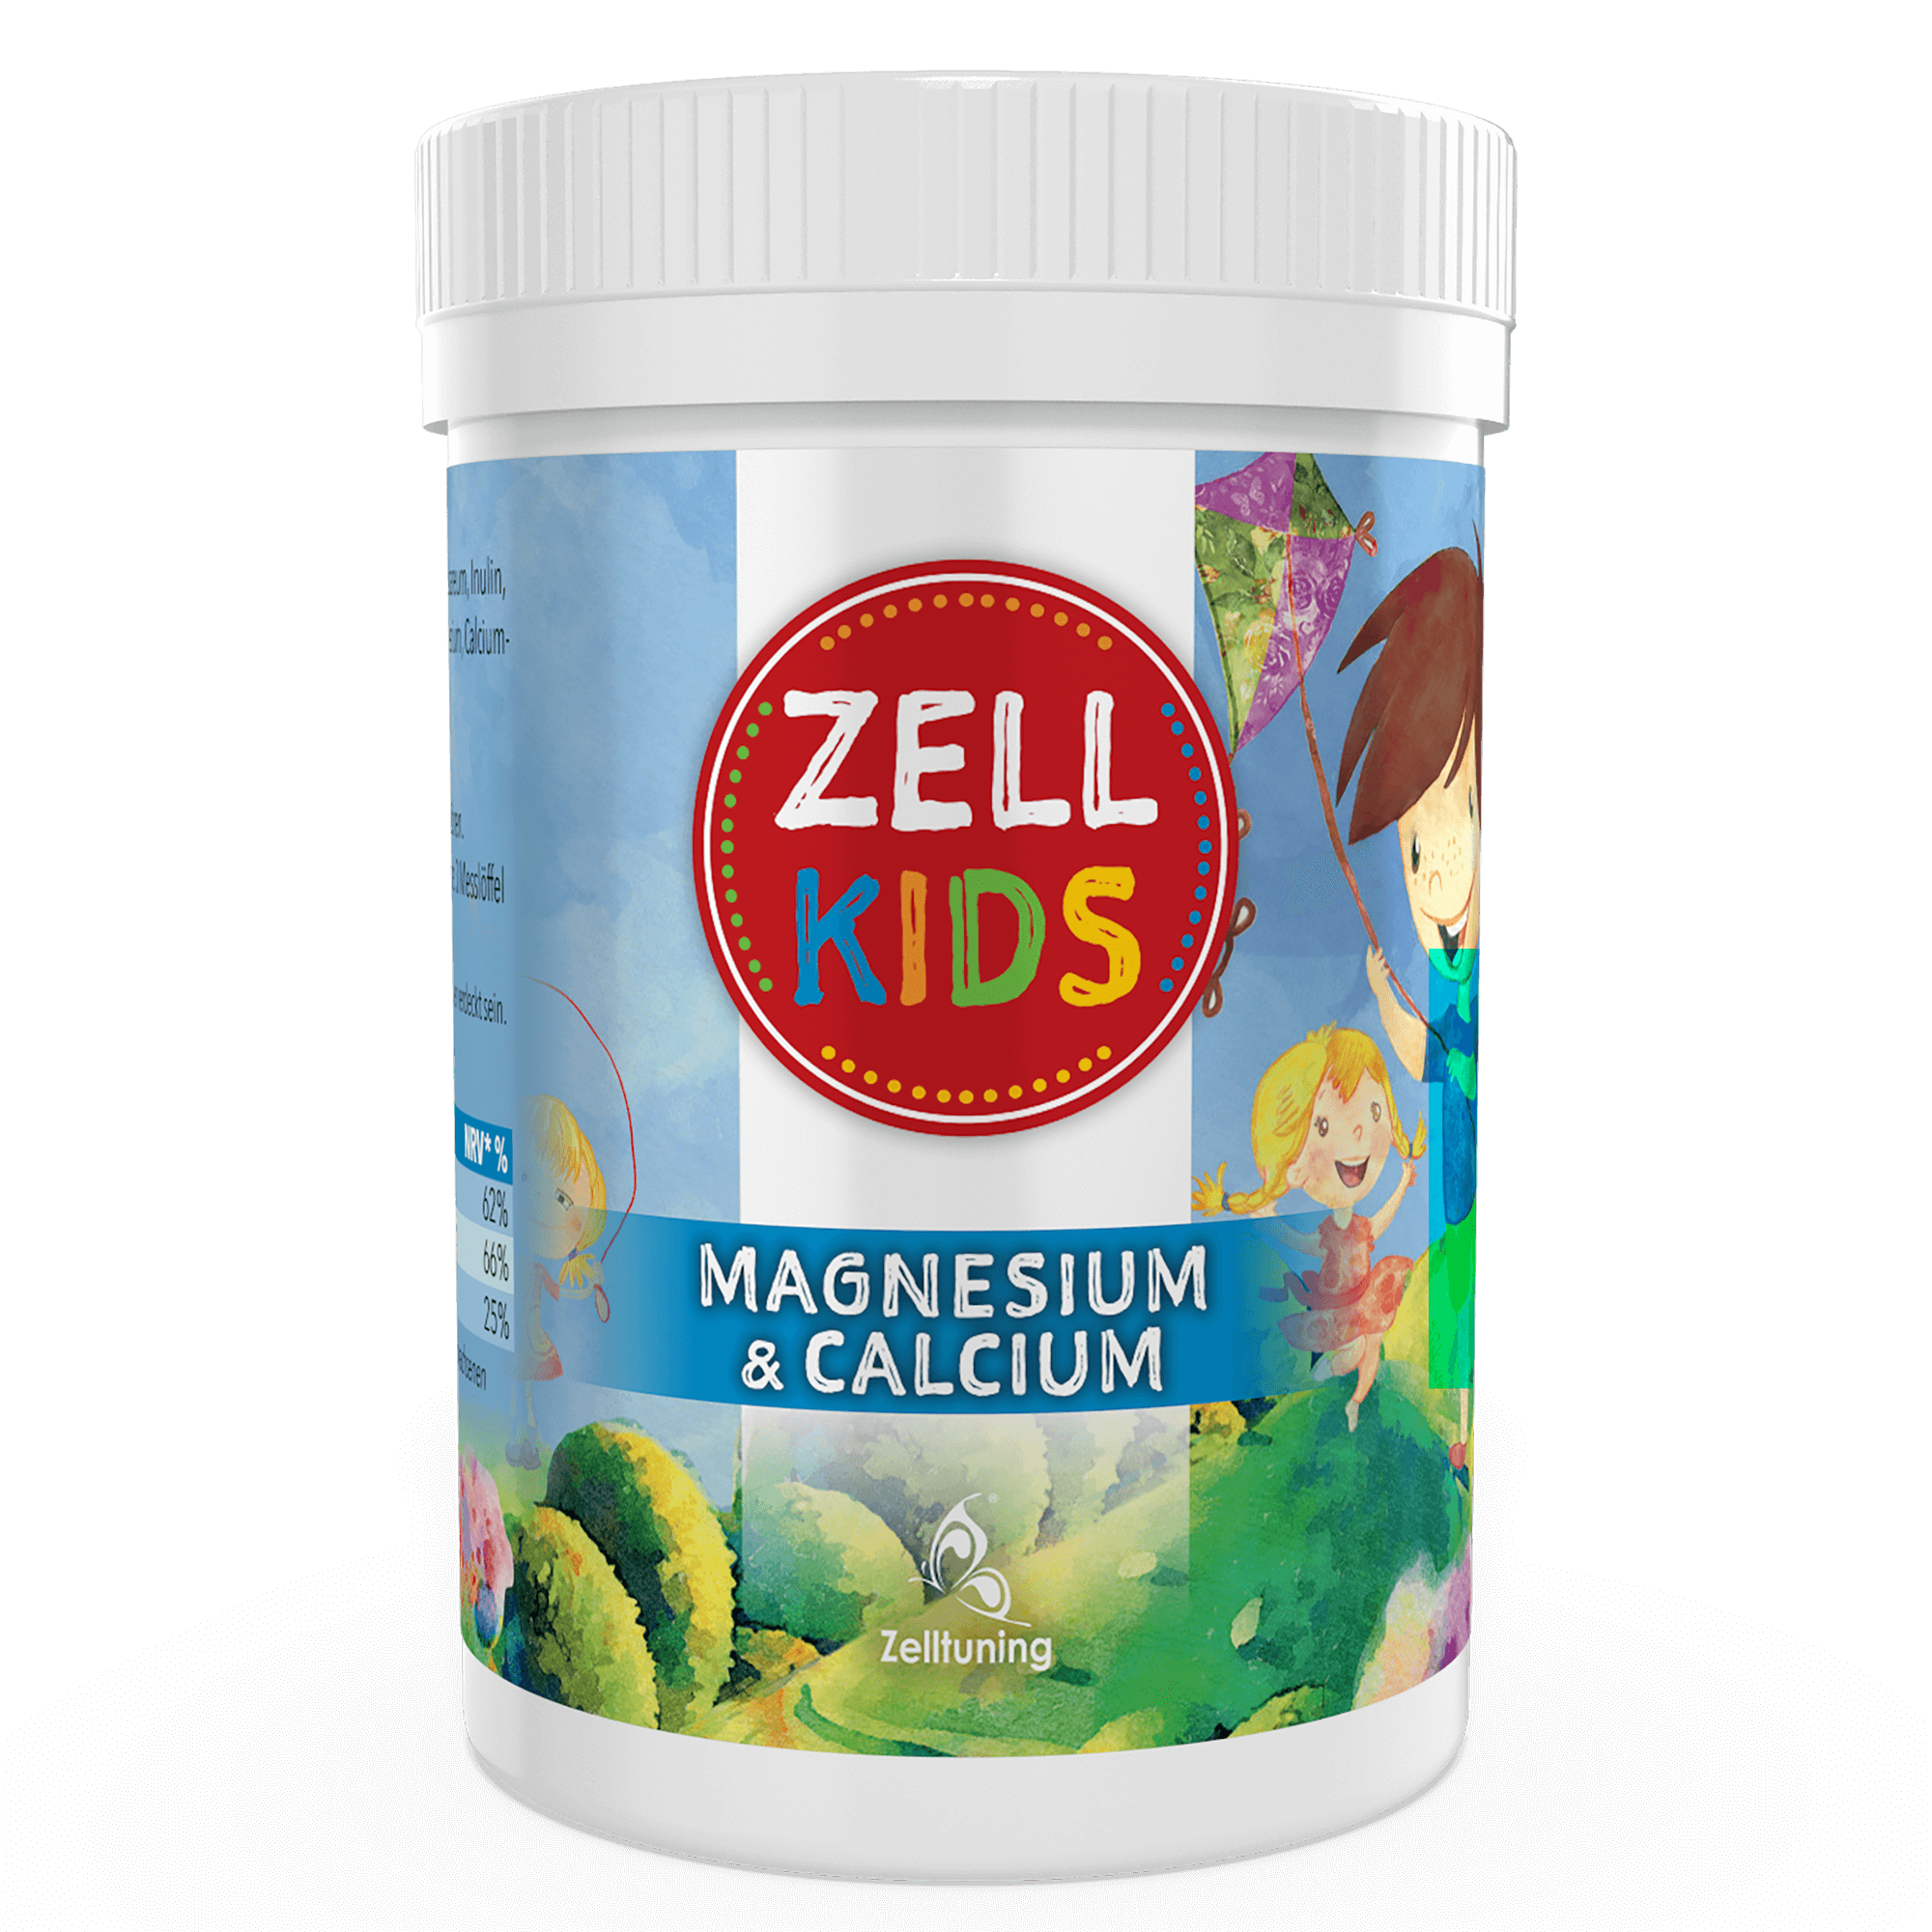 ZellKIDS - Magnesium & Calcium